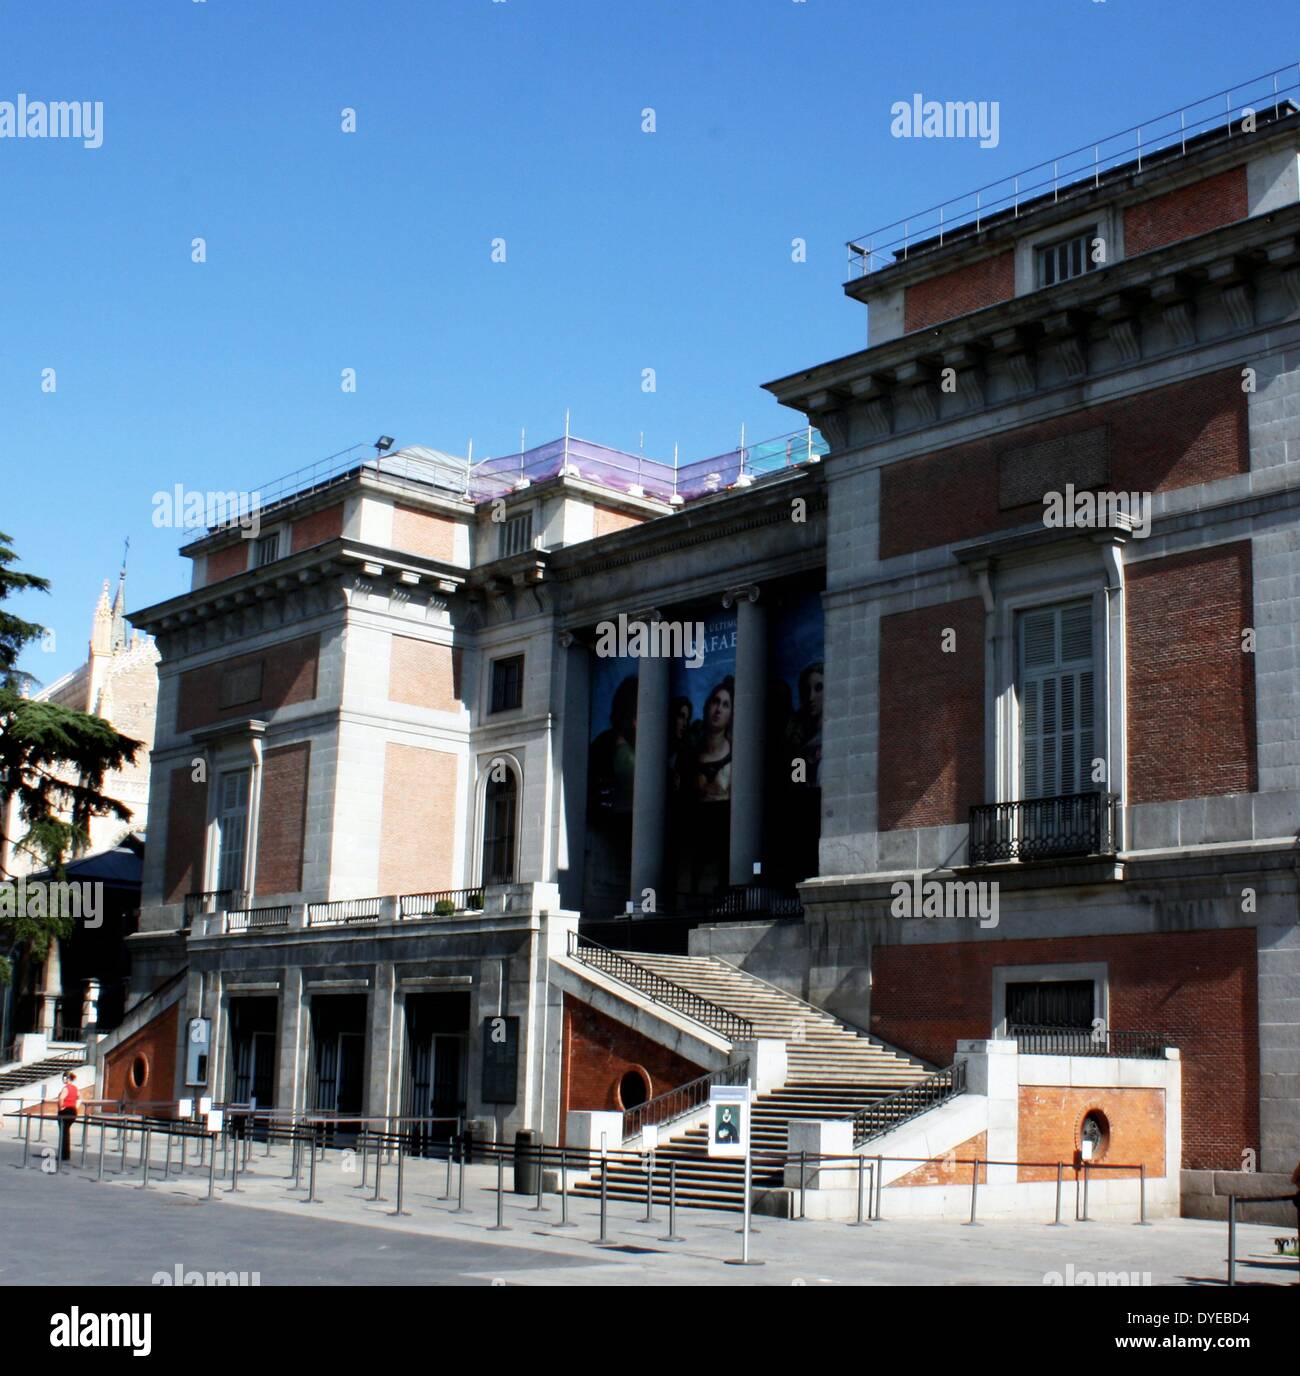 El Museo del Prado. El principal museo de arte nacional español situado en el centro de Madrid. Construido con una arquitectura neoclásica. Madrid. España 2013 Foto de stock